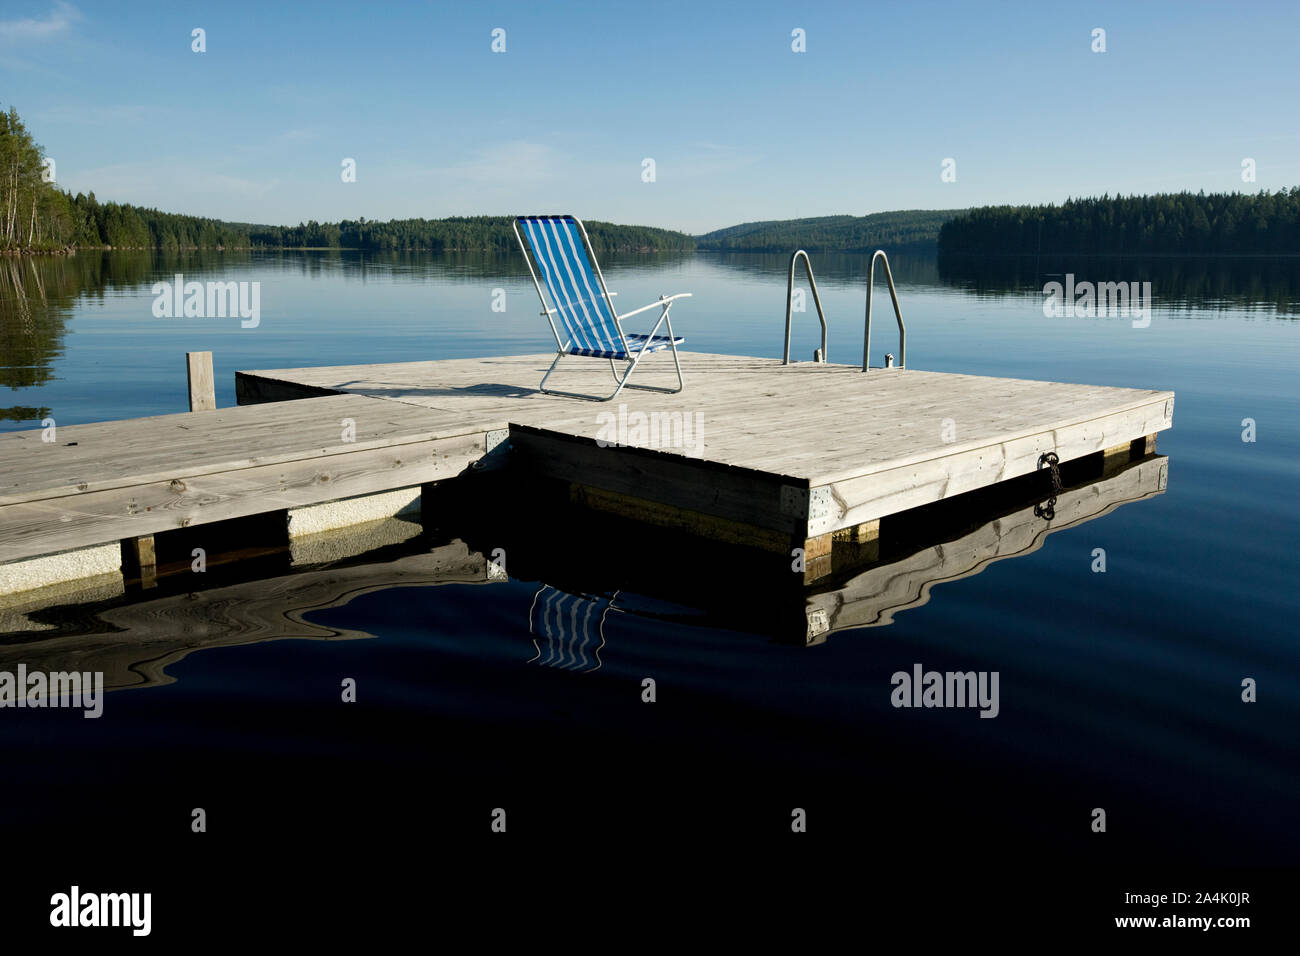 Deckchair on floating pier in Varmland, Sweden Stock Photo